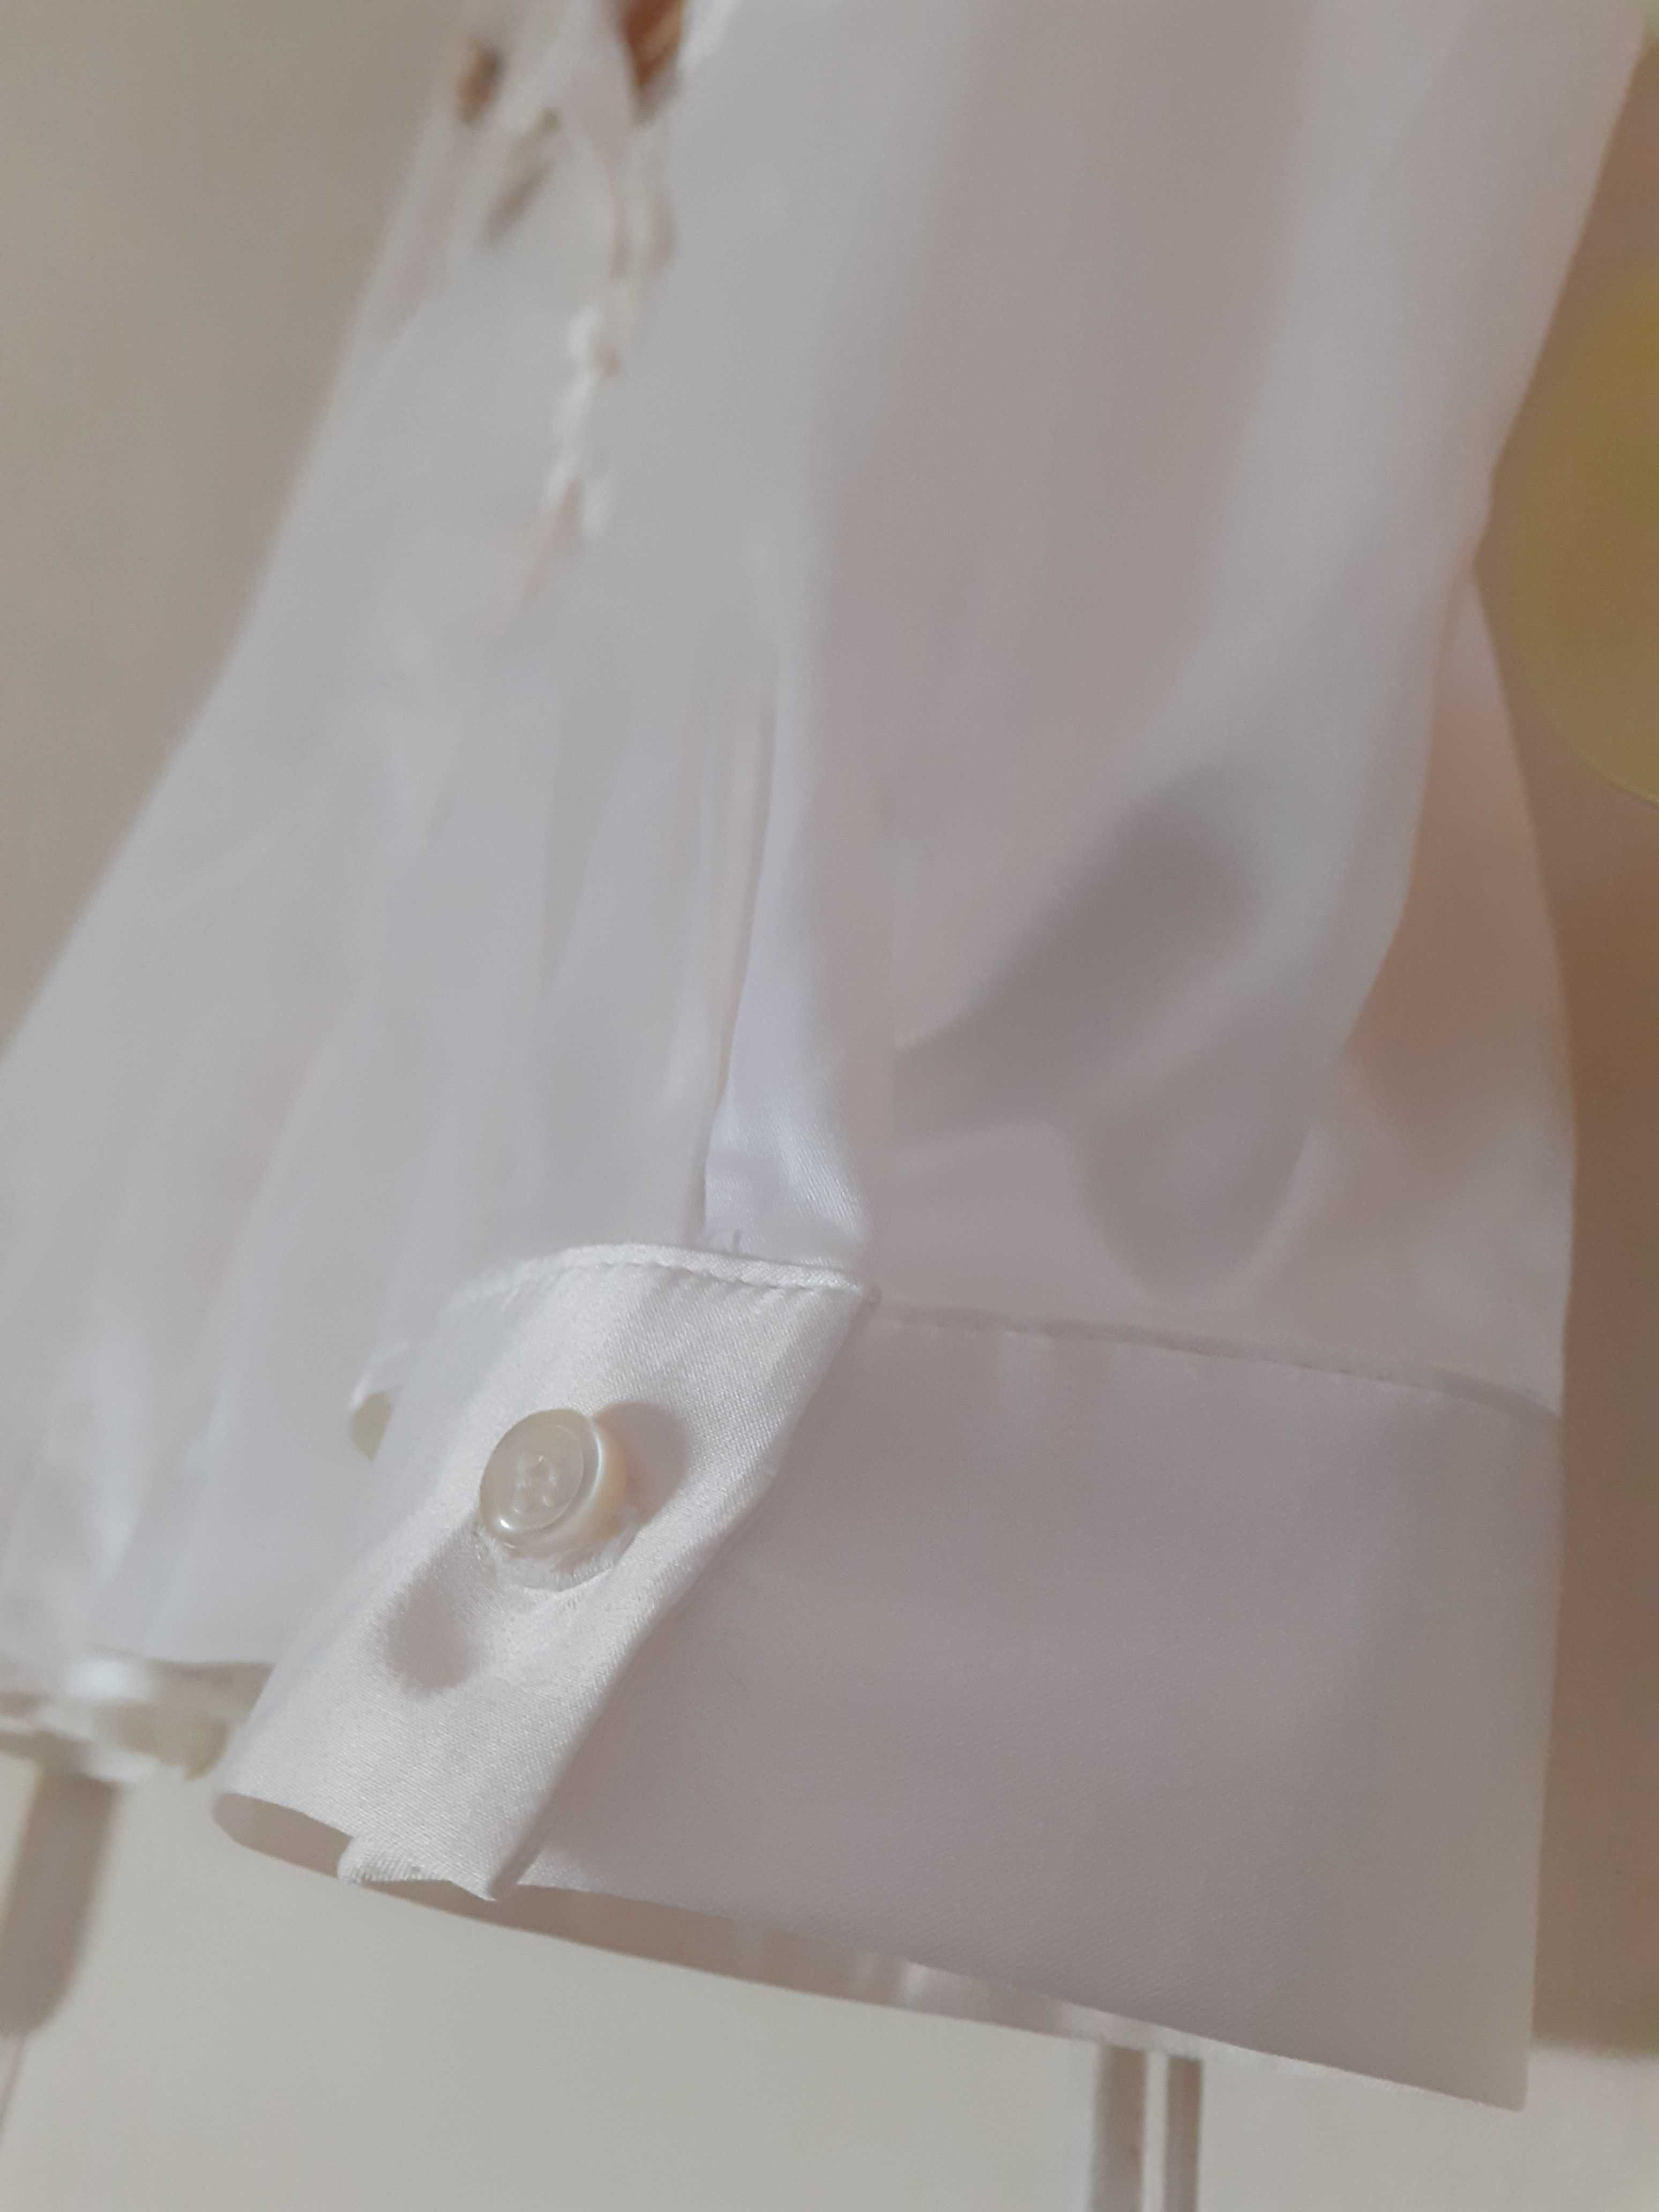 camisa branca - estilo seda